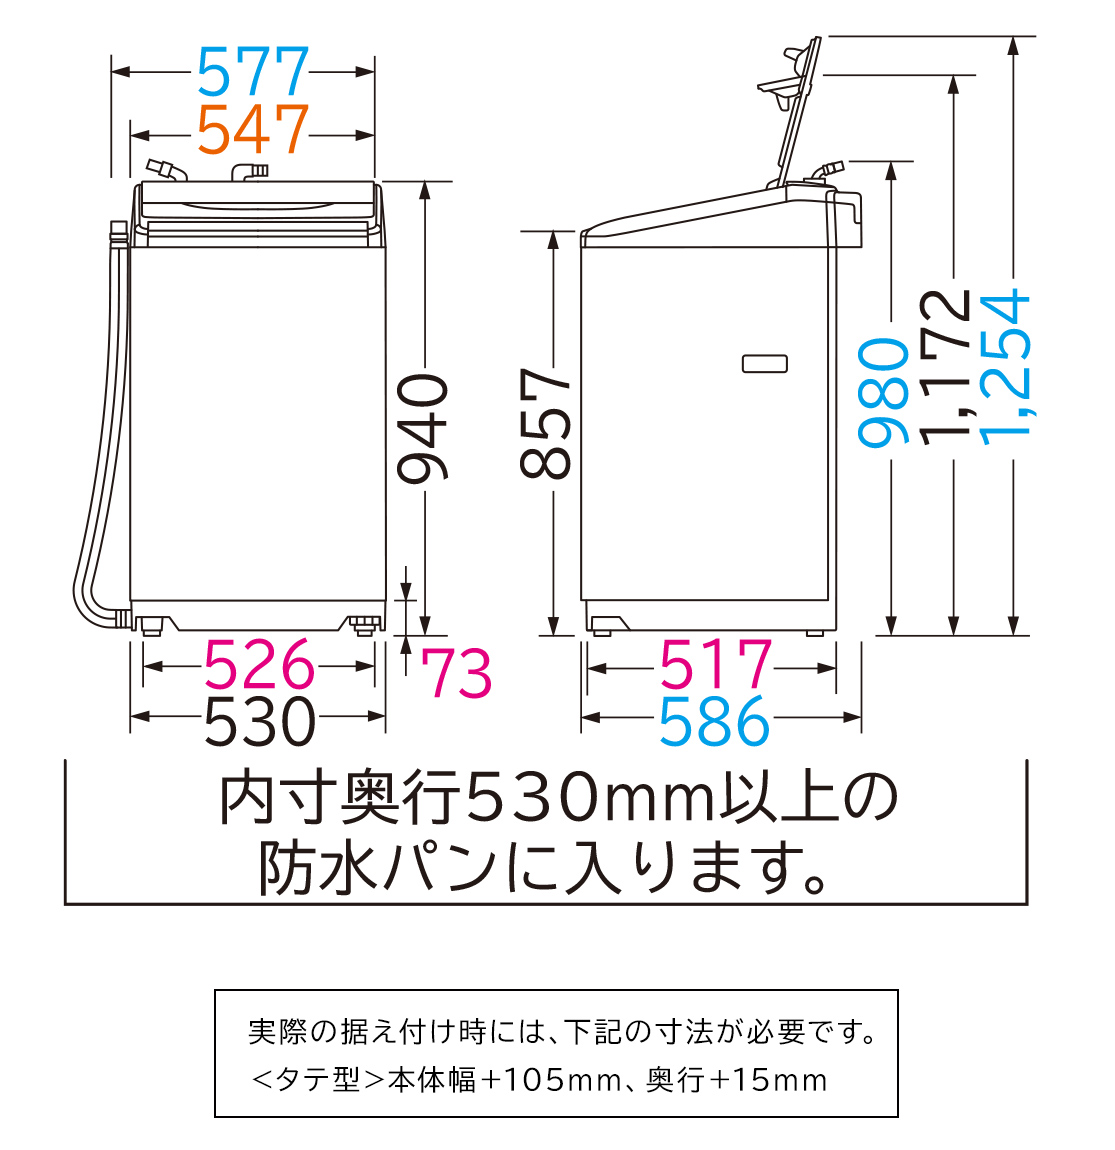 仕様：全自動洗濯機 BW-V70B ： 洗濯機・衣類乾燥機 ： 日立の家電品